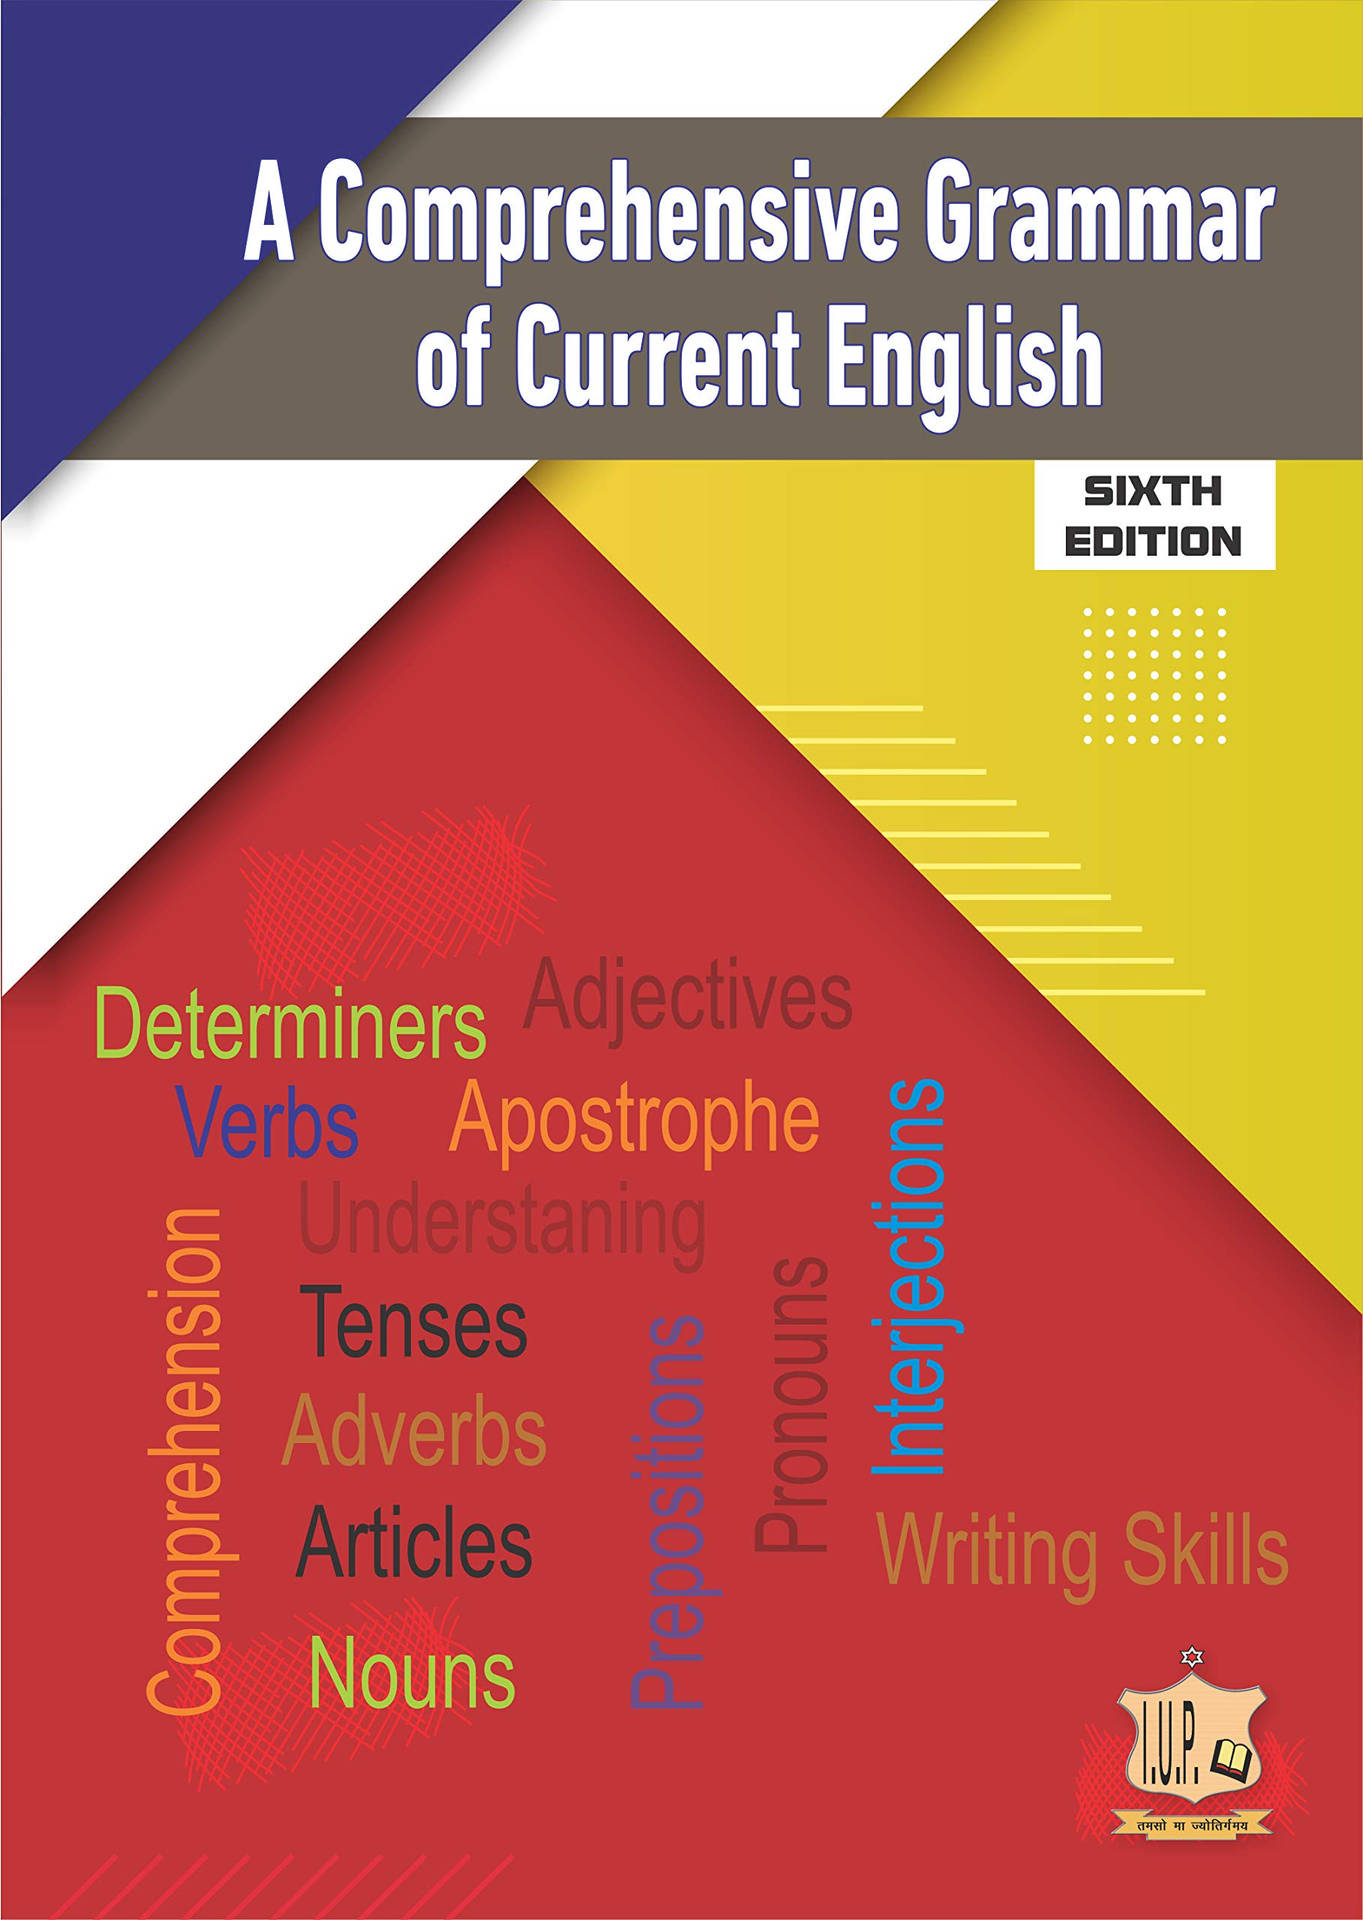 Comprehensive Grammar Book Background